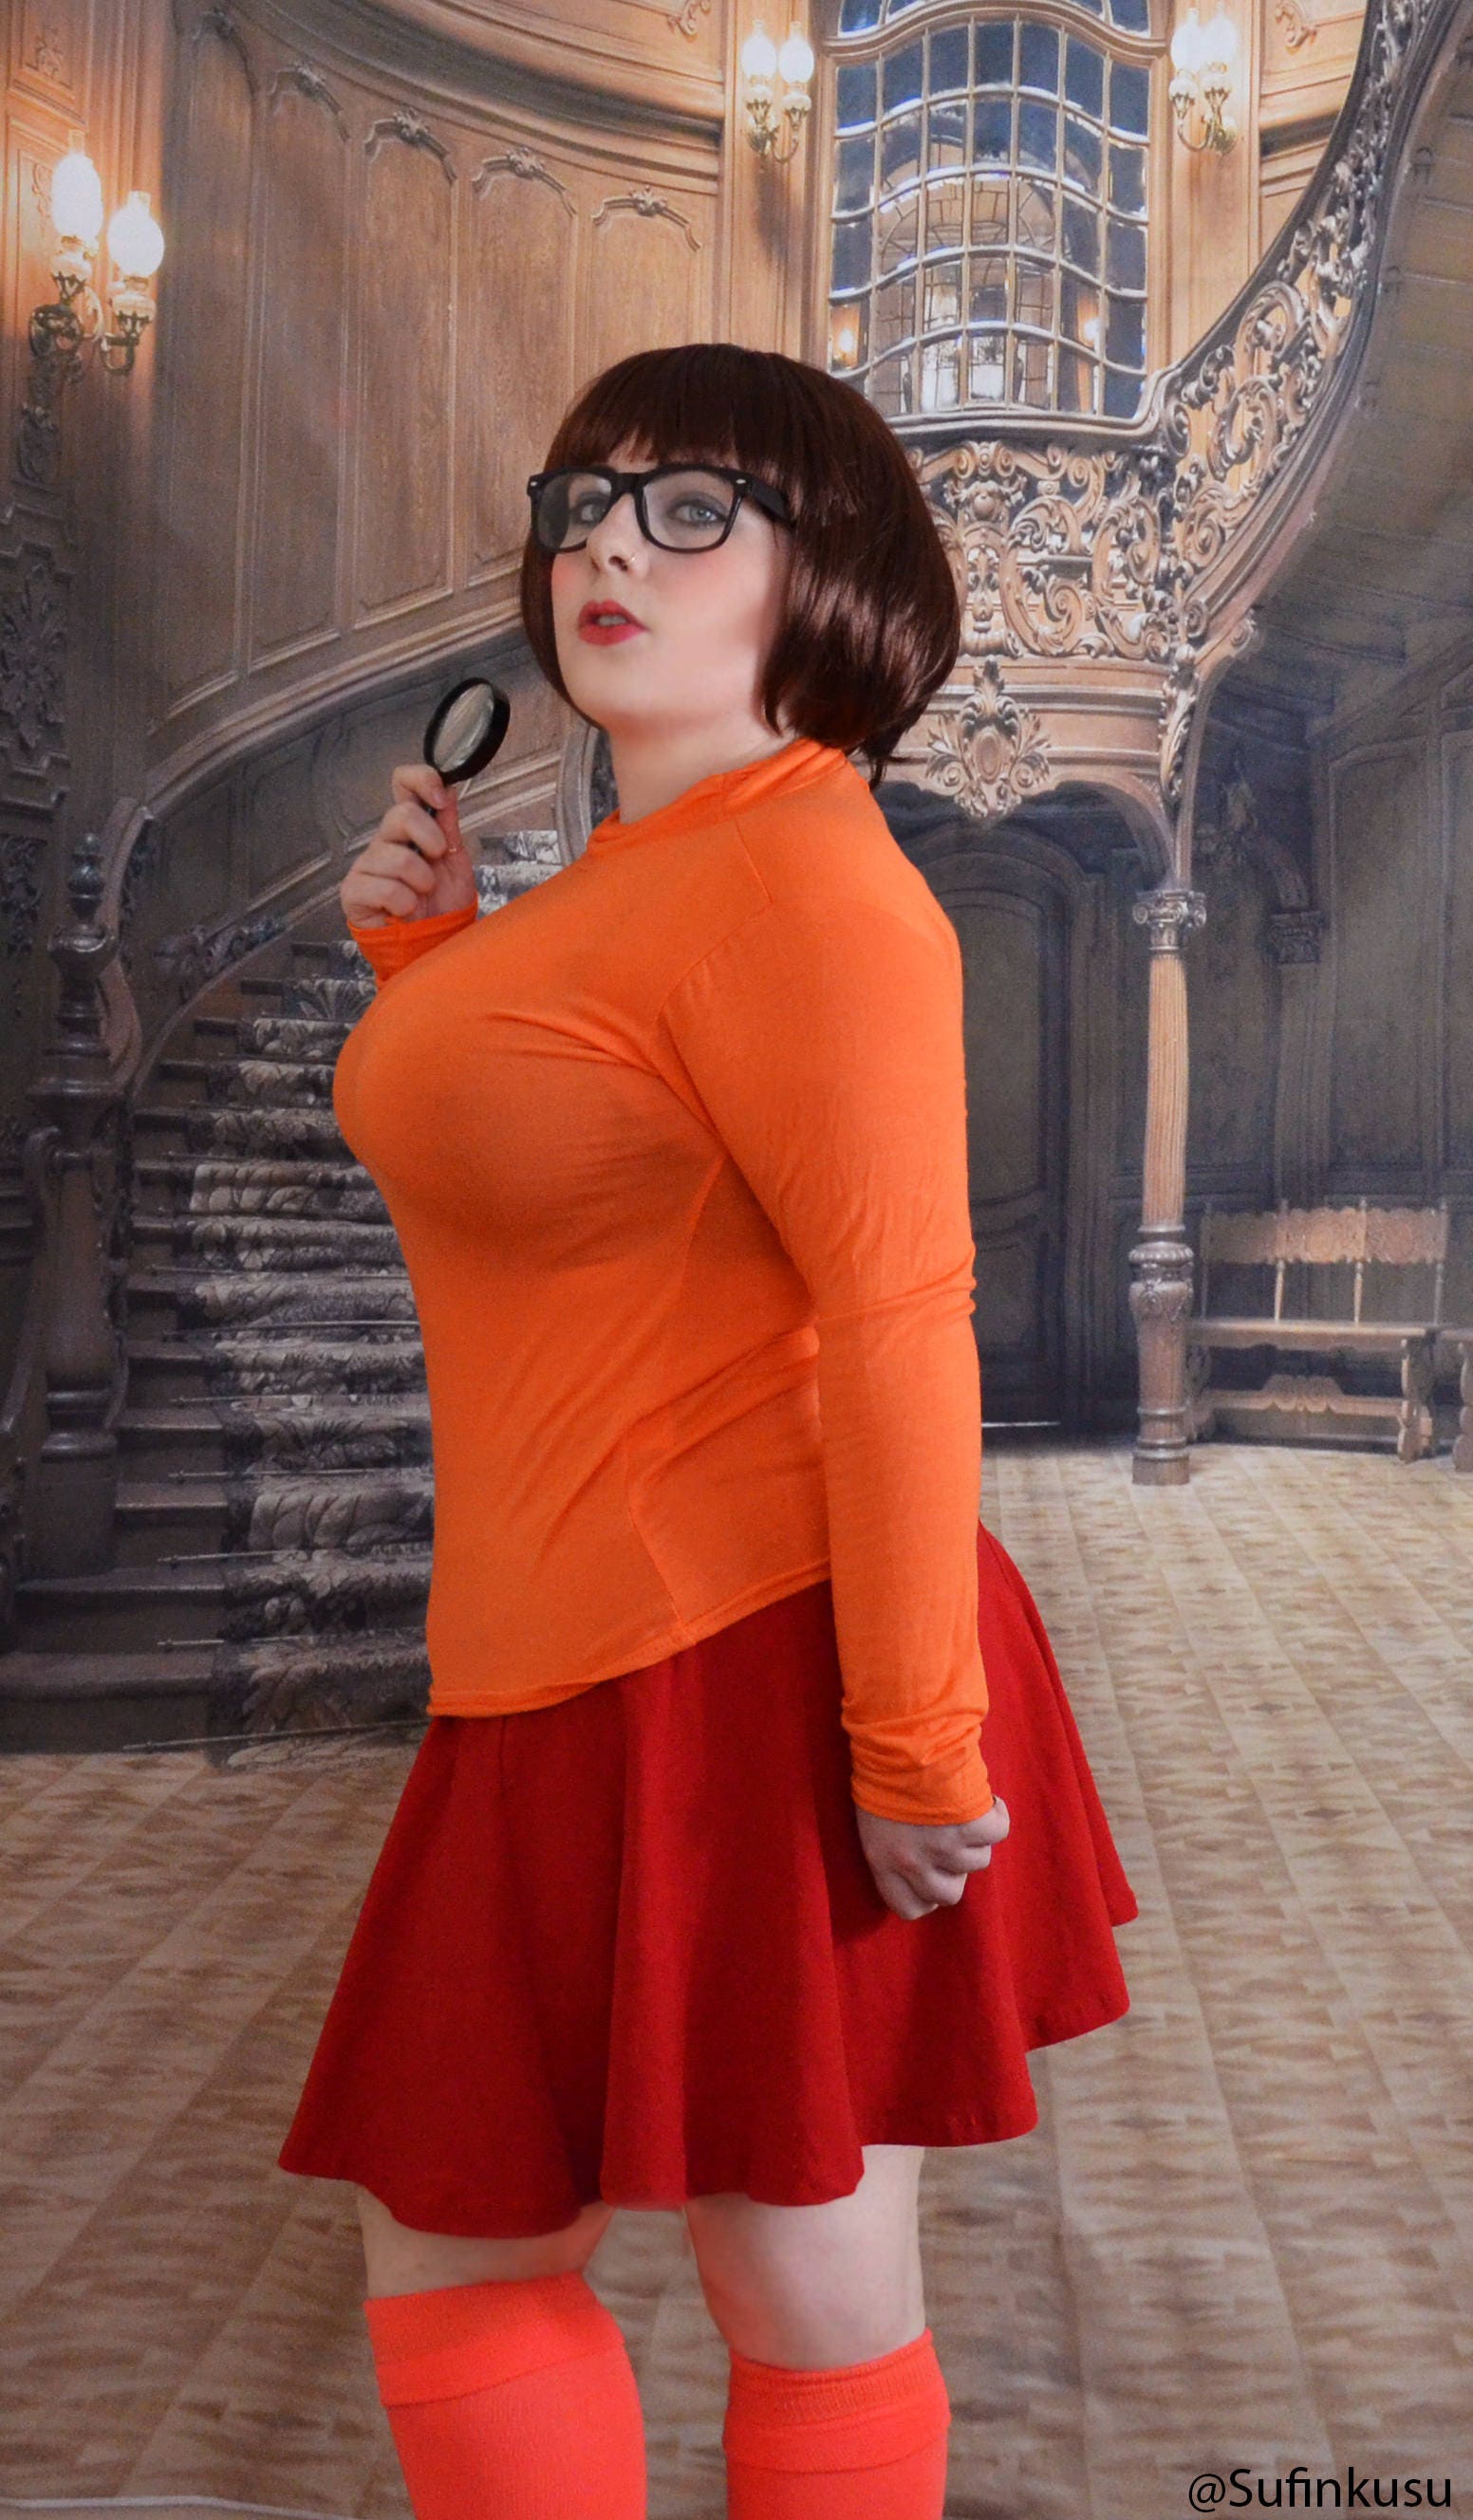 Velma Gone Awry by Matt Cost